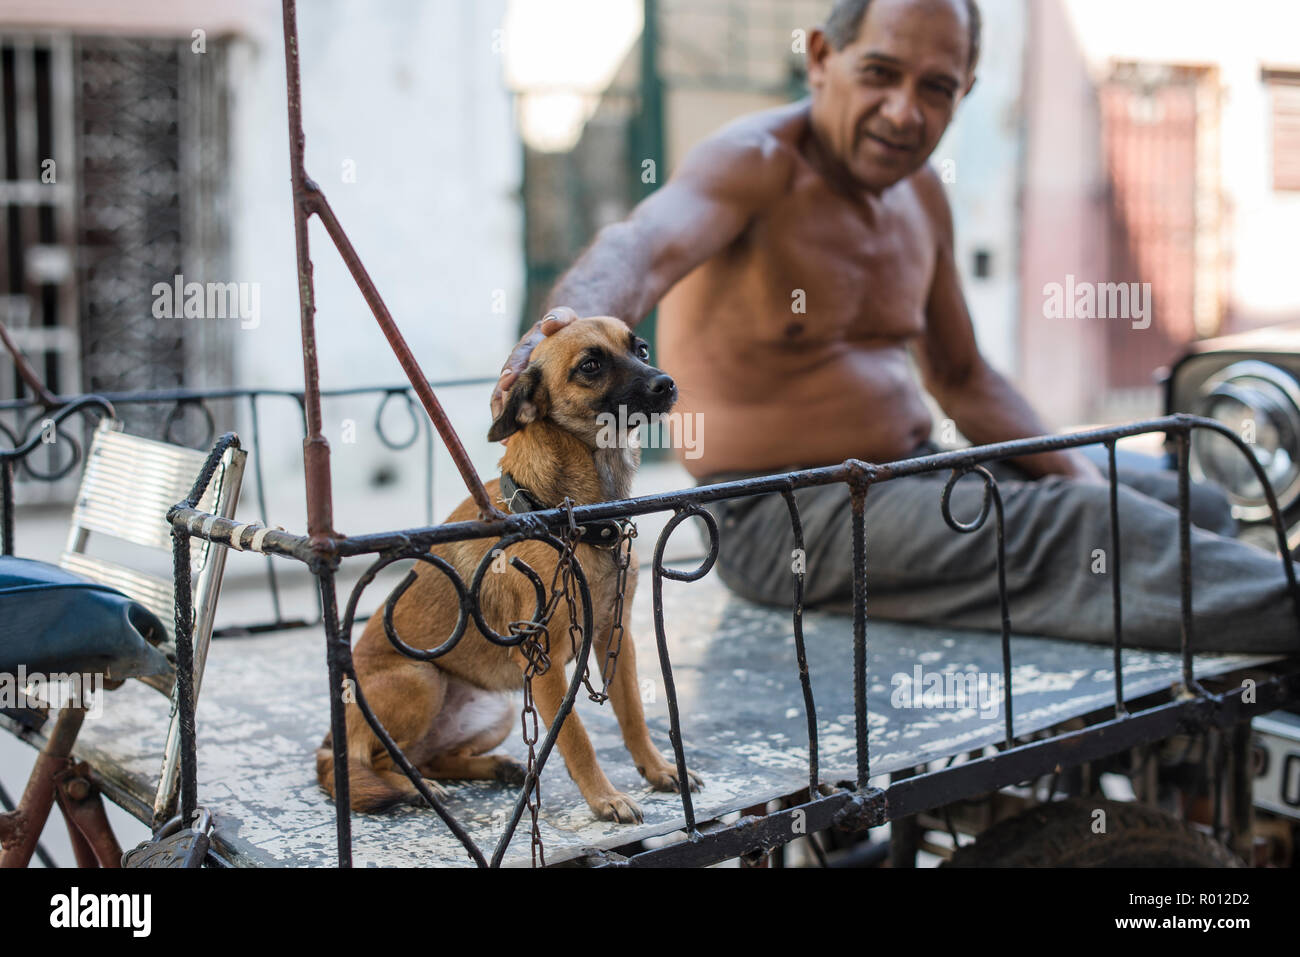 Eine kubanische Mann hängt heraus mit seinem Hund an einem heißen Tag in Havanna. Stockfoto